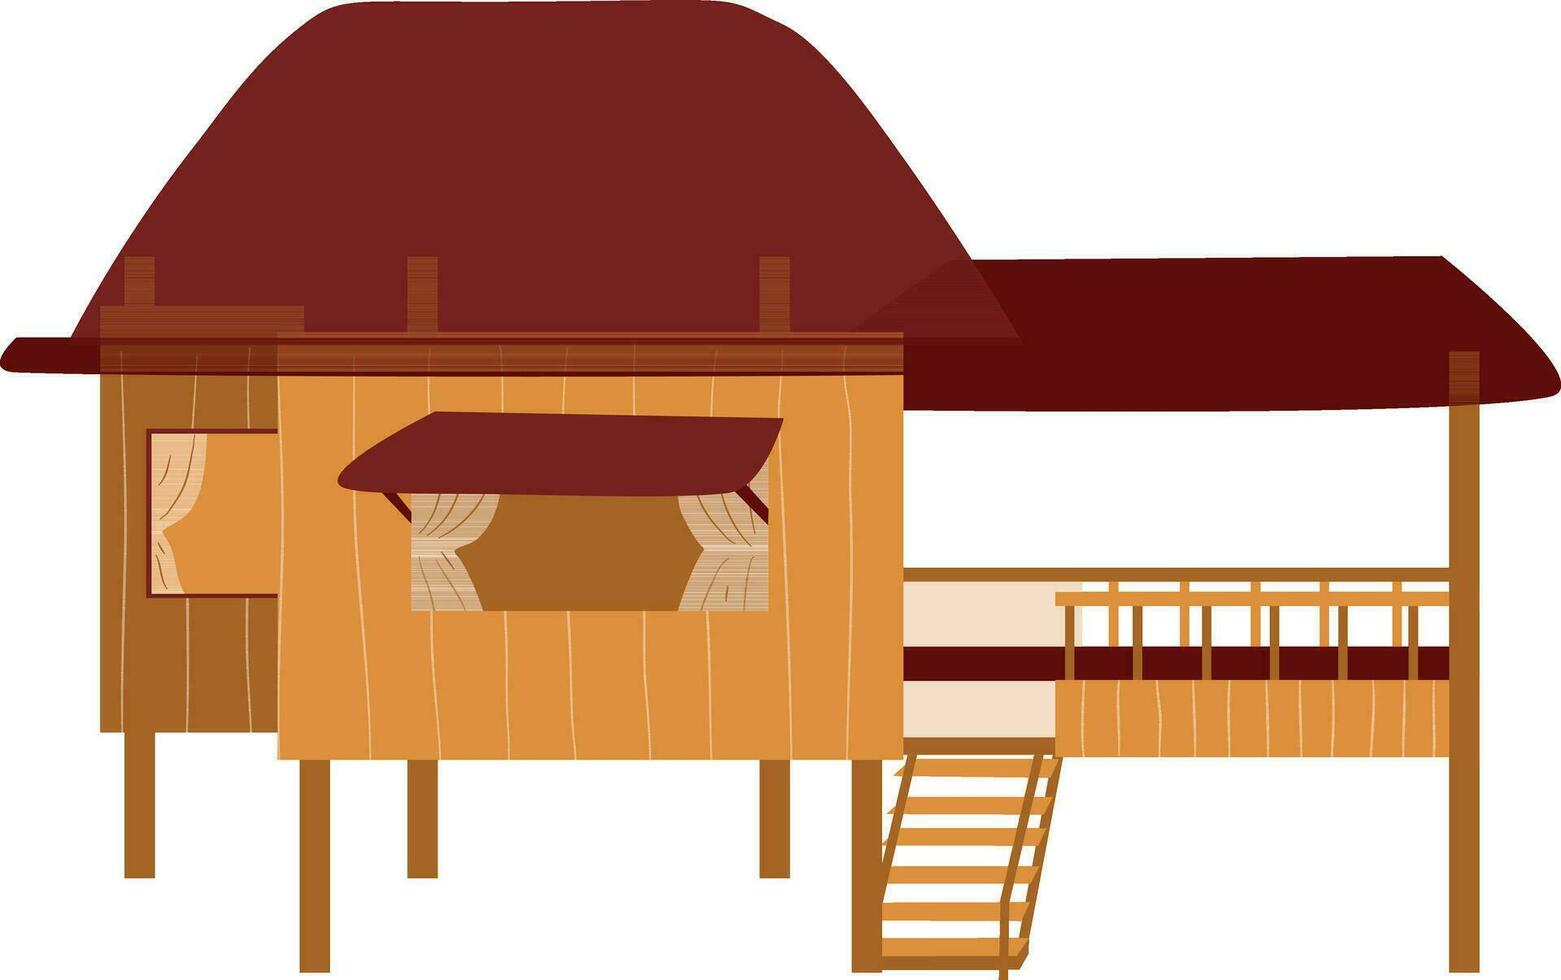 trä- bungalow isolerat på vit bakgrund. vektor illustration.